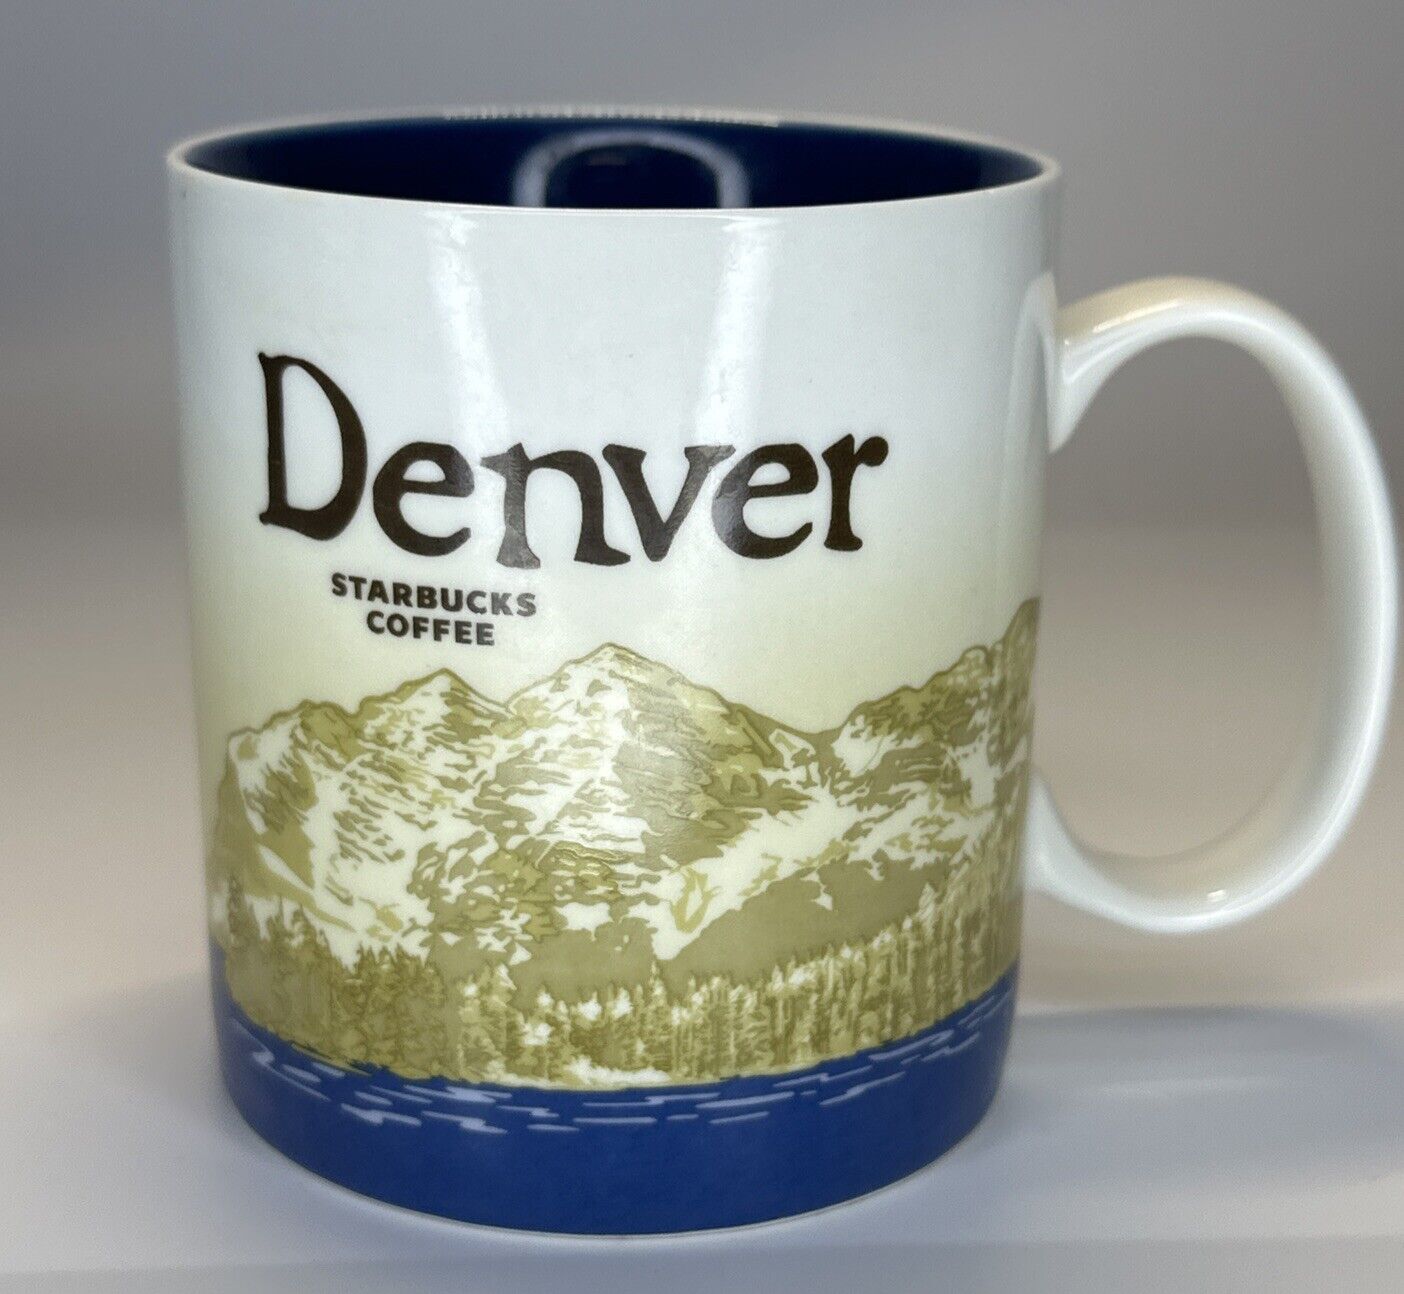 2009 Denver Starbucks Coffee Mug Global Icon Collector Series 16 oz 